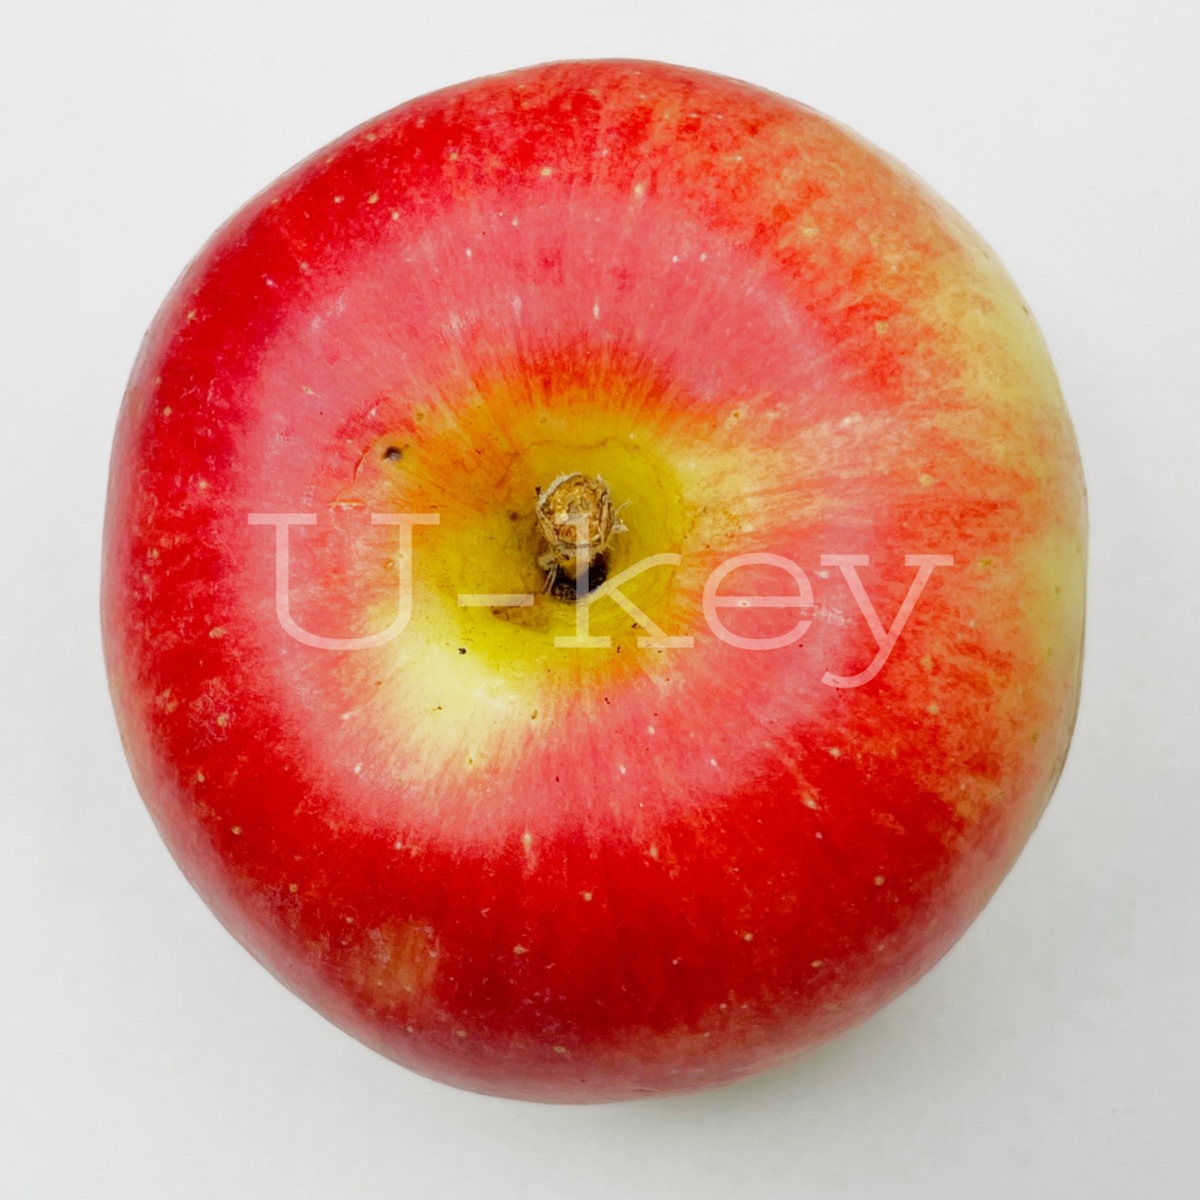 Apple ‘Sansa’, Malus domestica